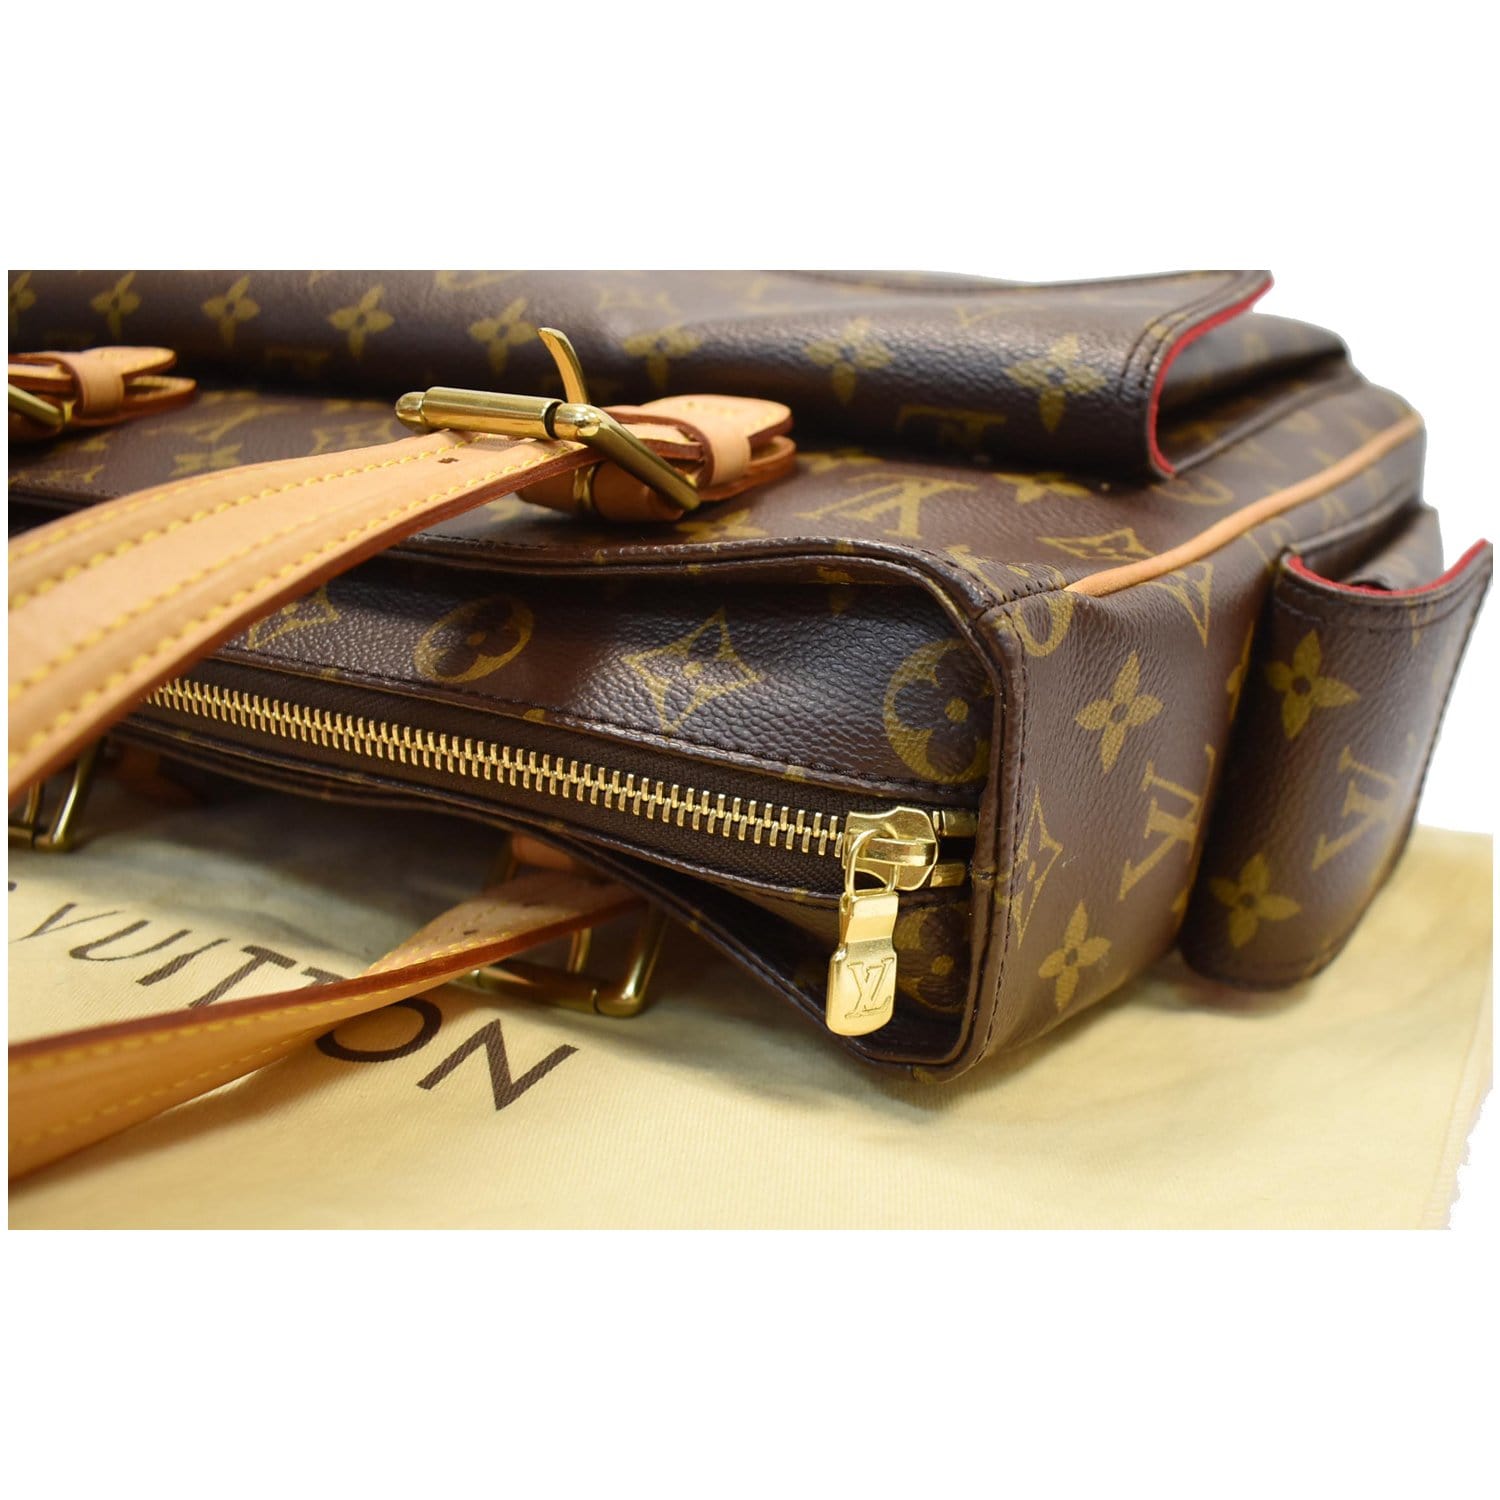 Louis Vuitton Multiple Cite Shoulder Bag - Farfetch